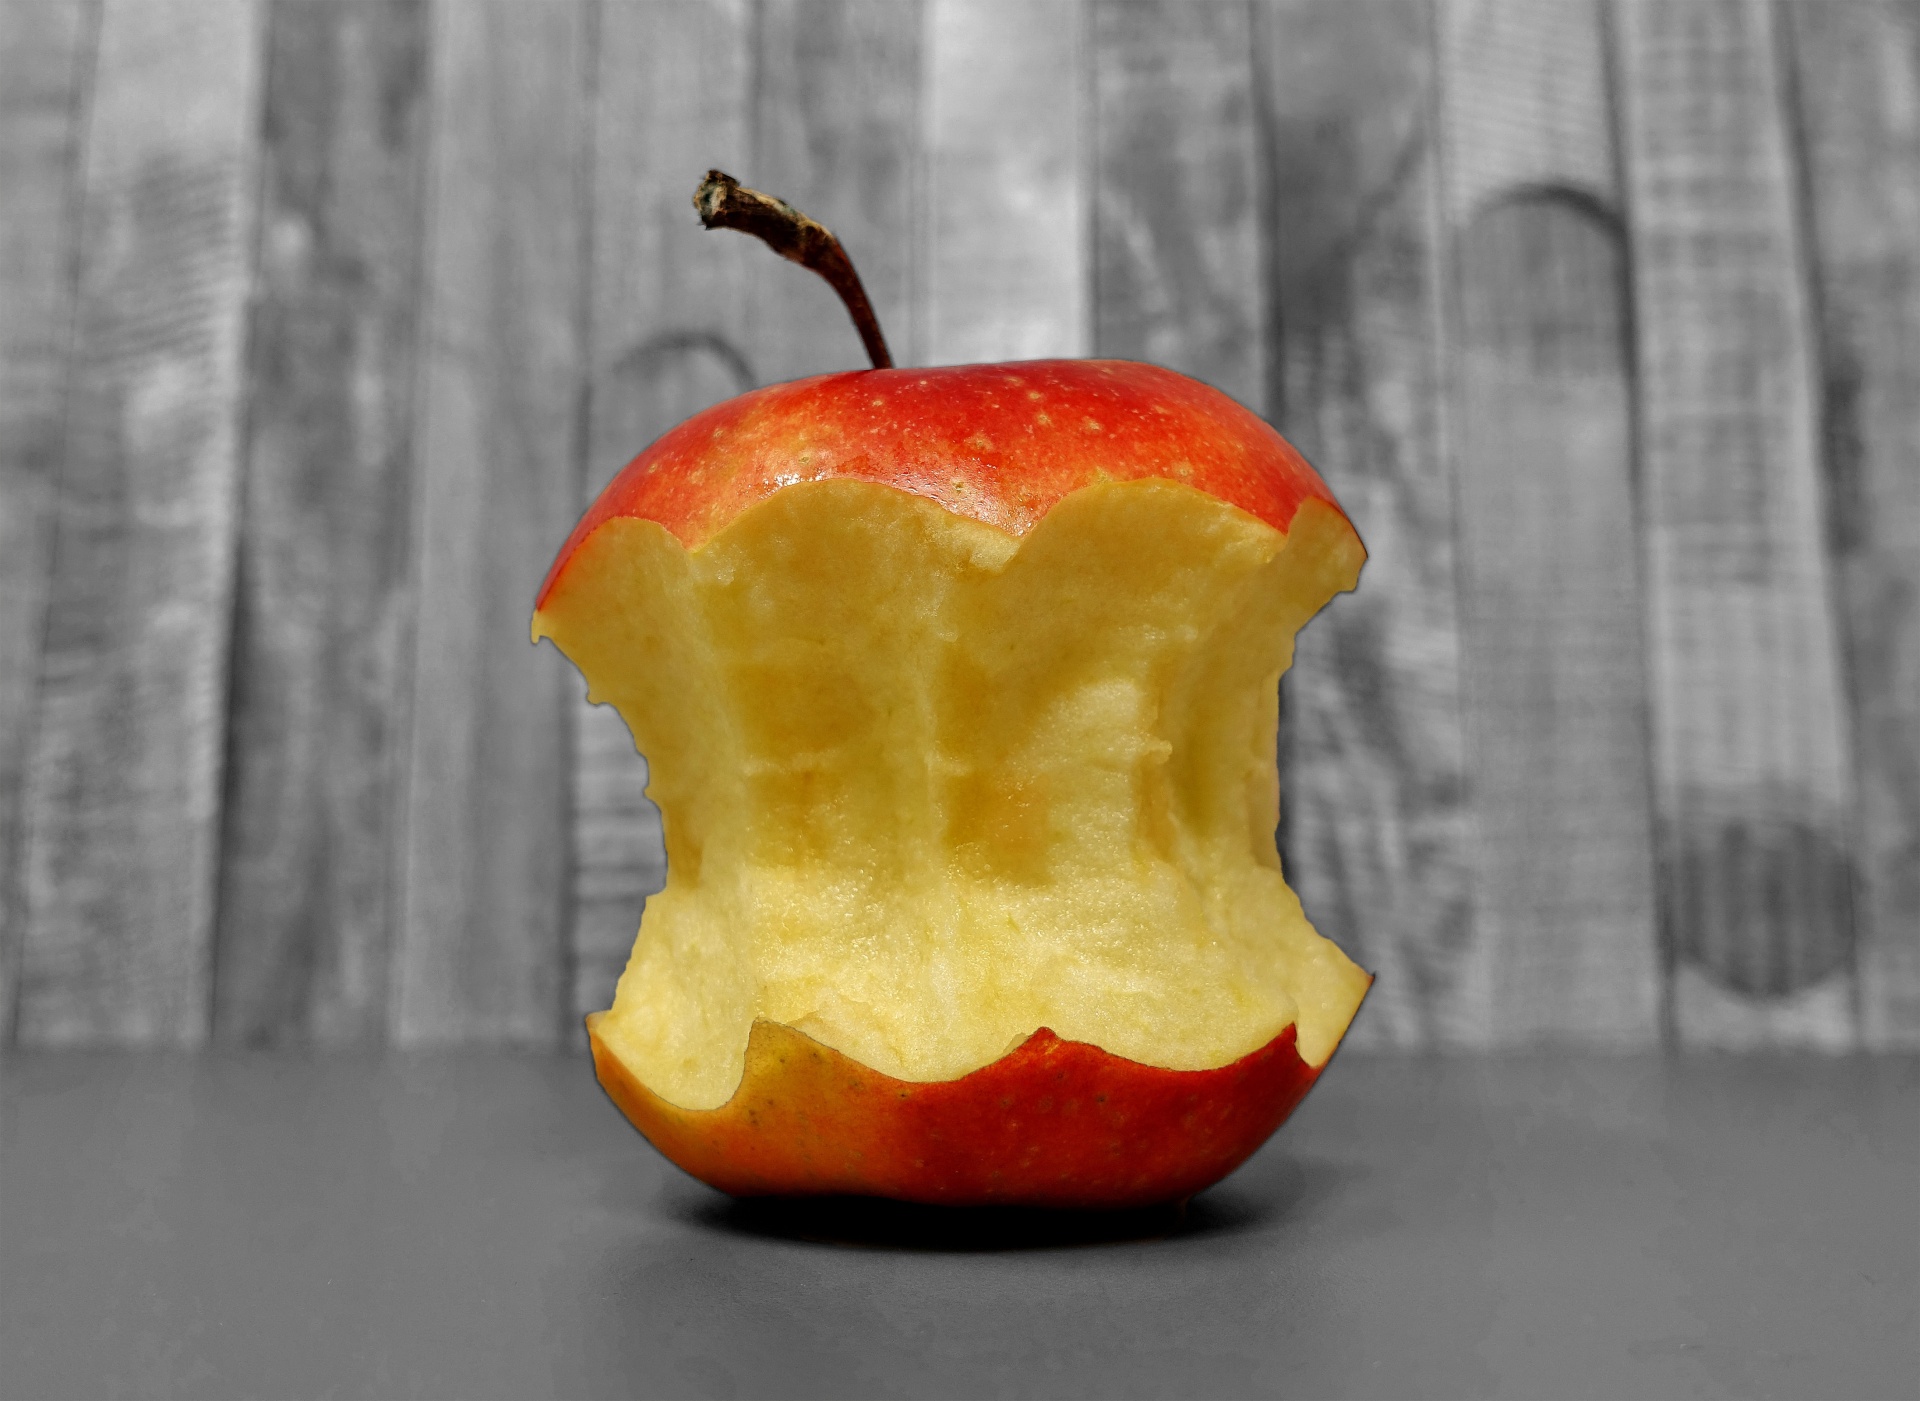 An apple, part-eaten